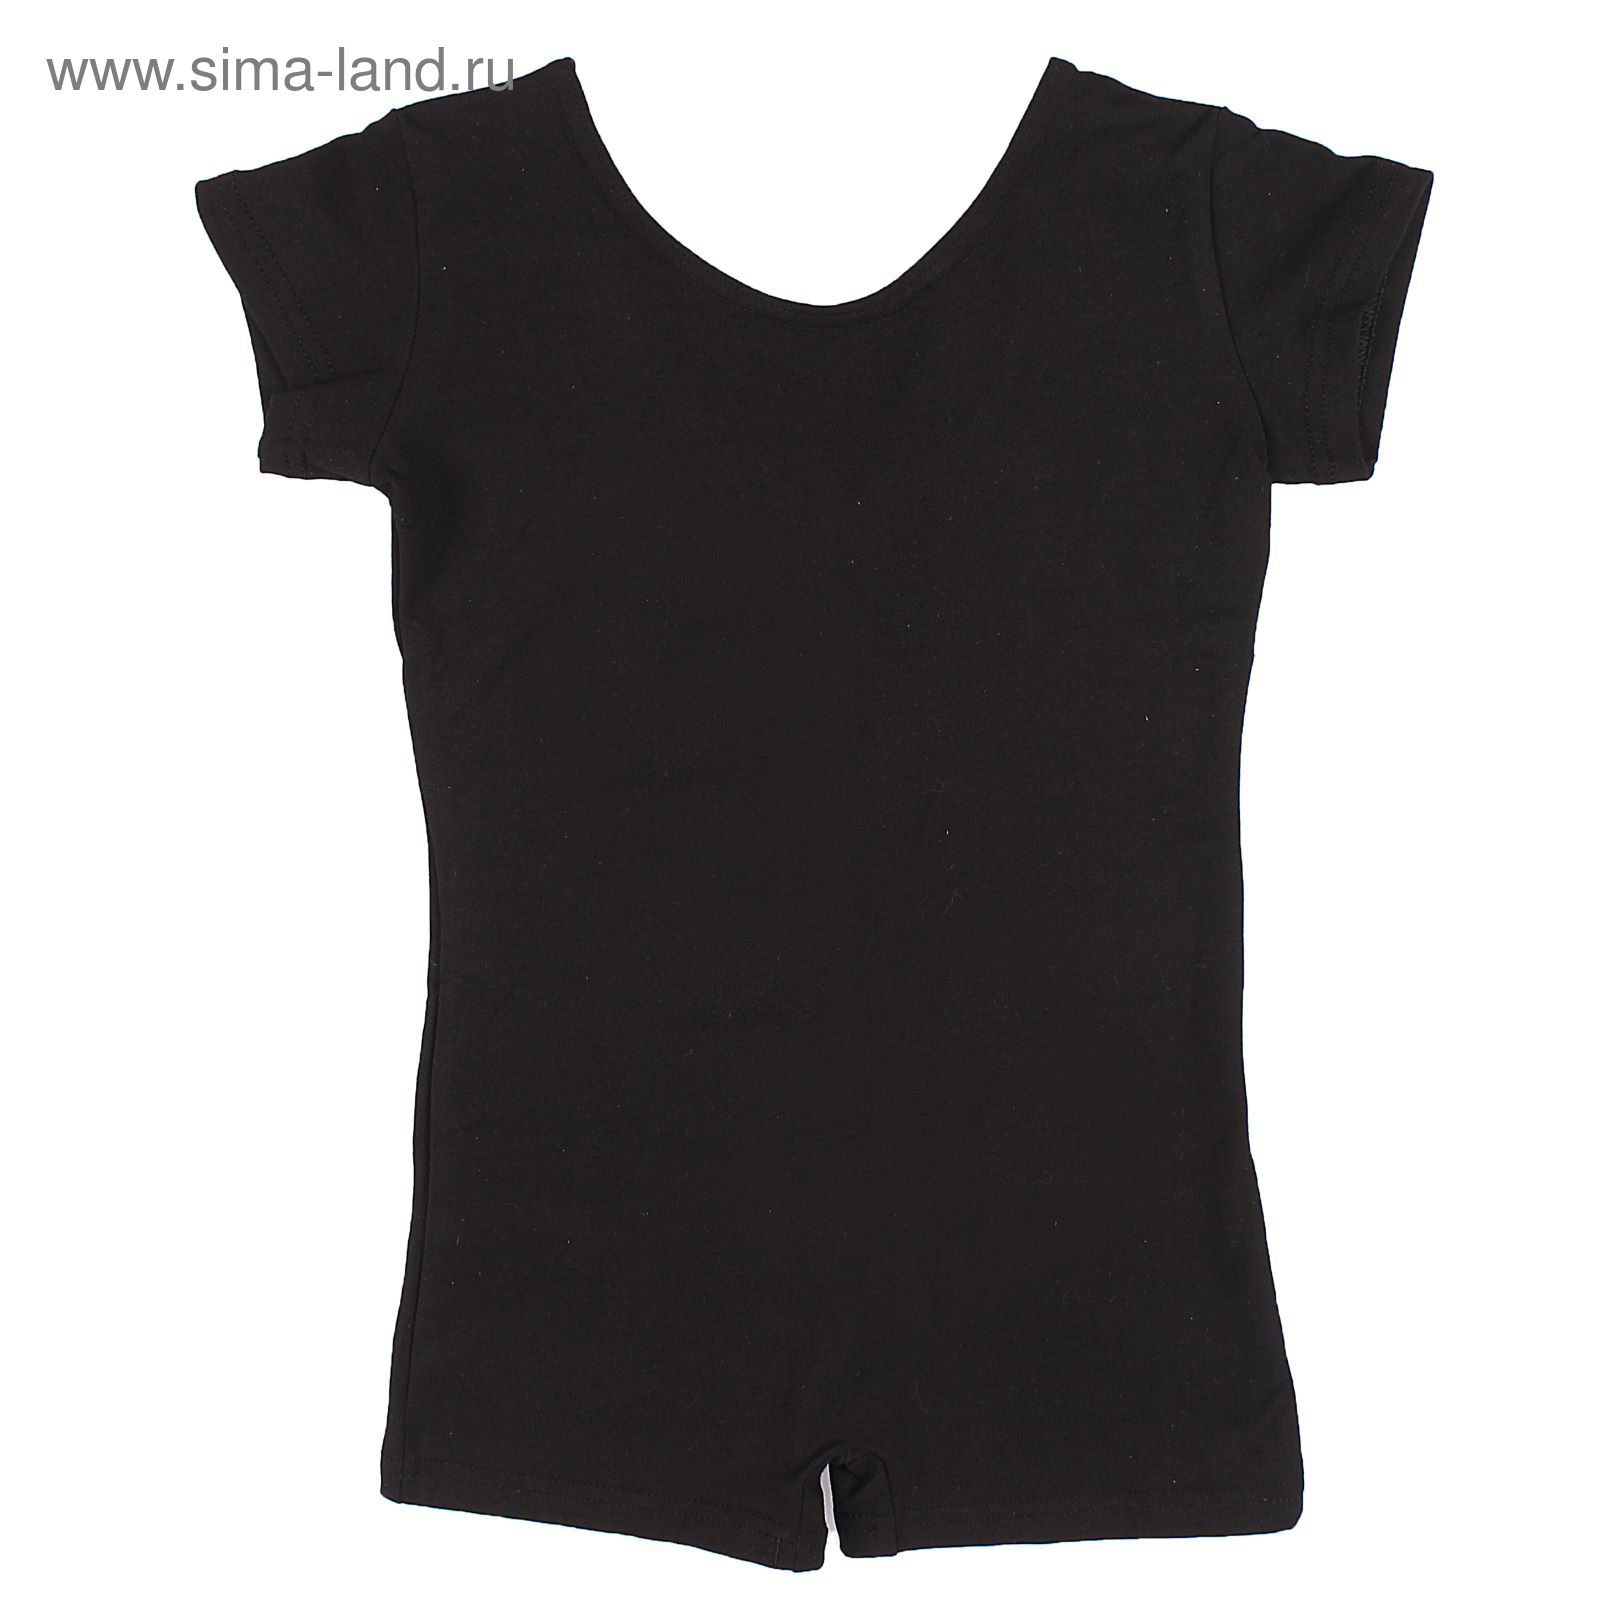 Купальник-шорты, с коротким рукавом, размер 28, цвет чёрный